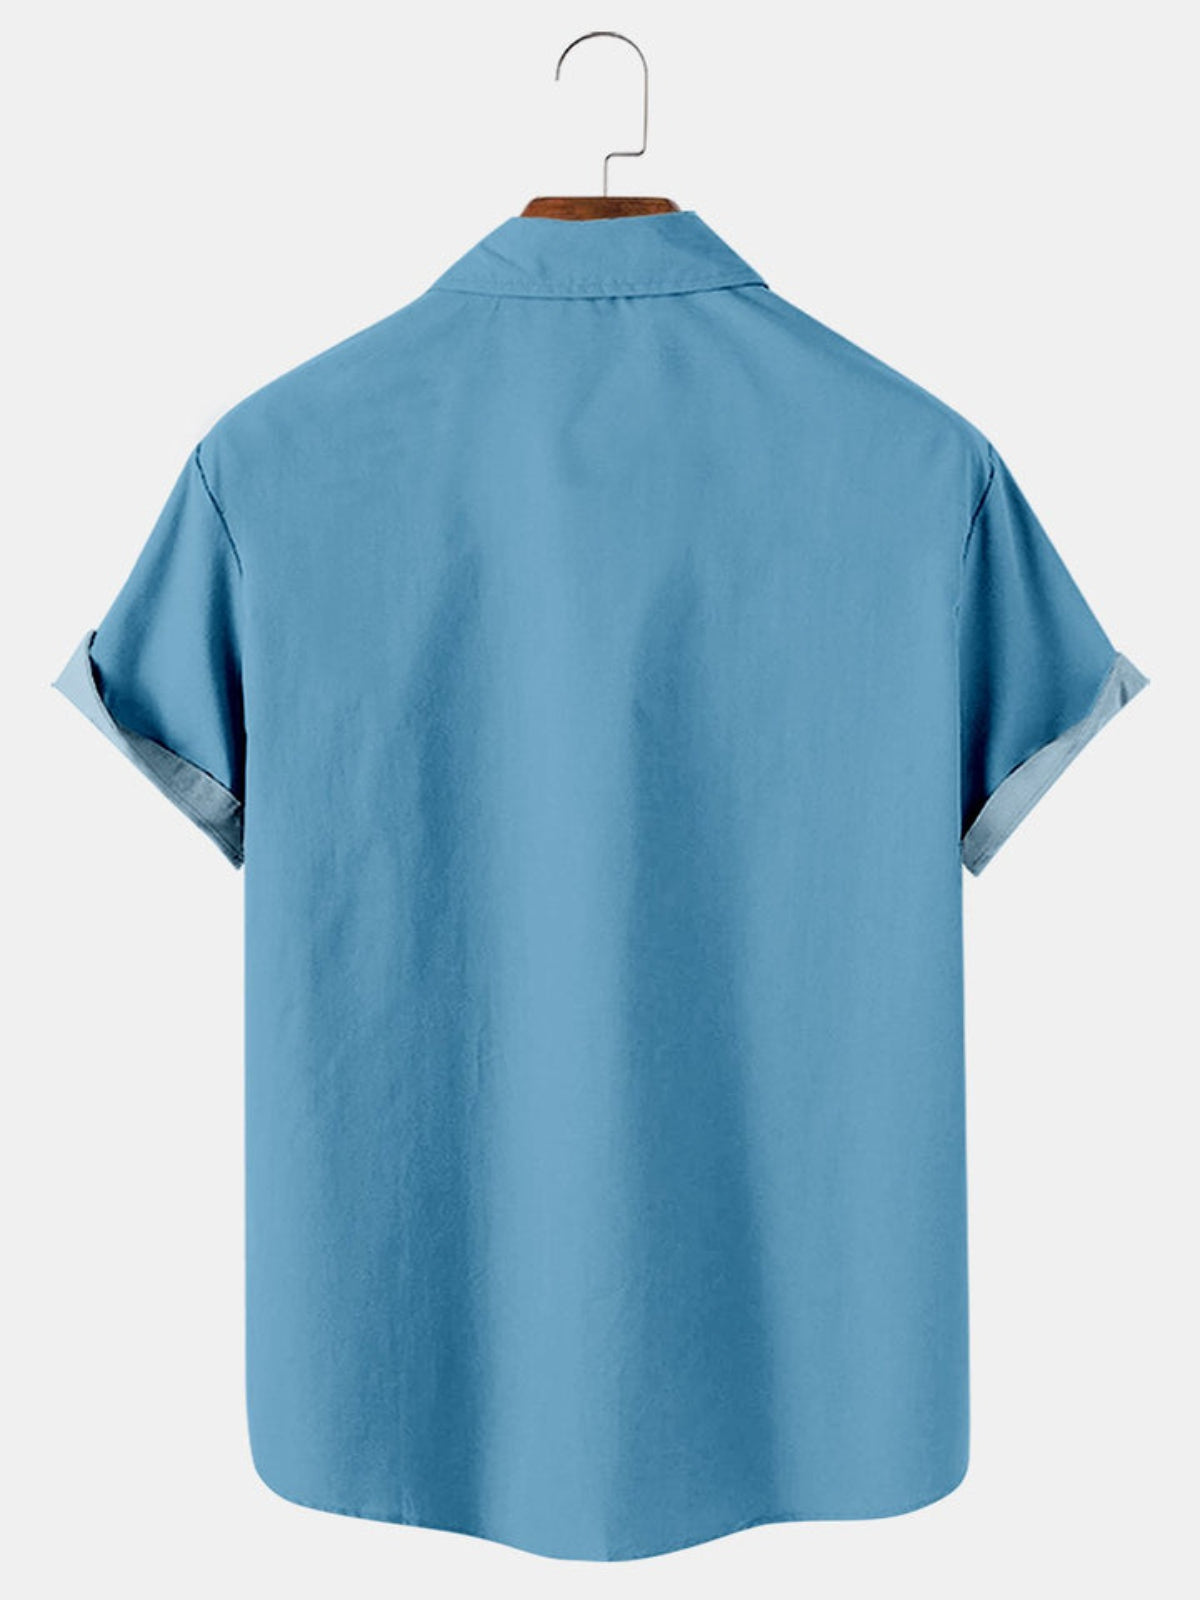 Frog Printed Short Sleeve Shirt